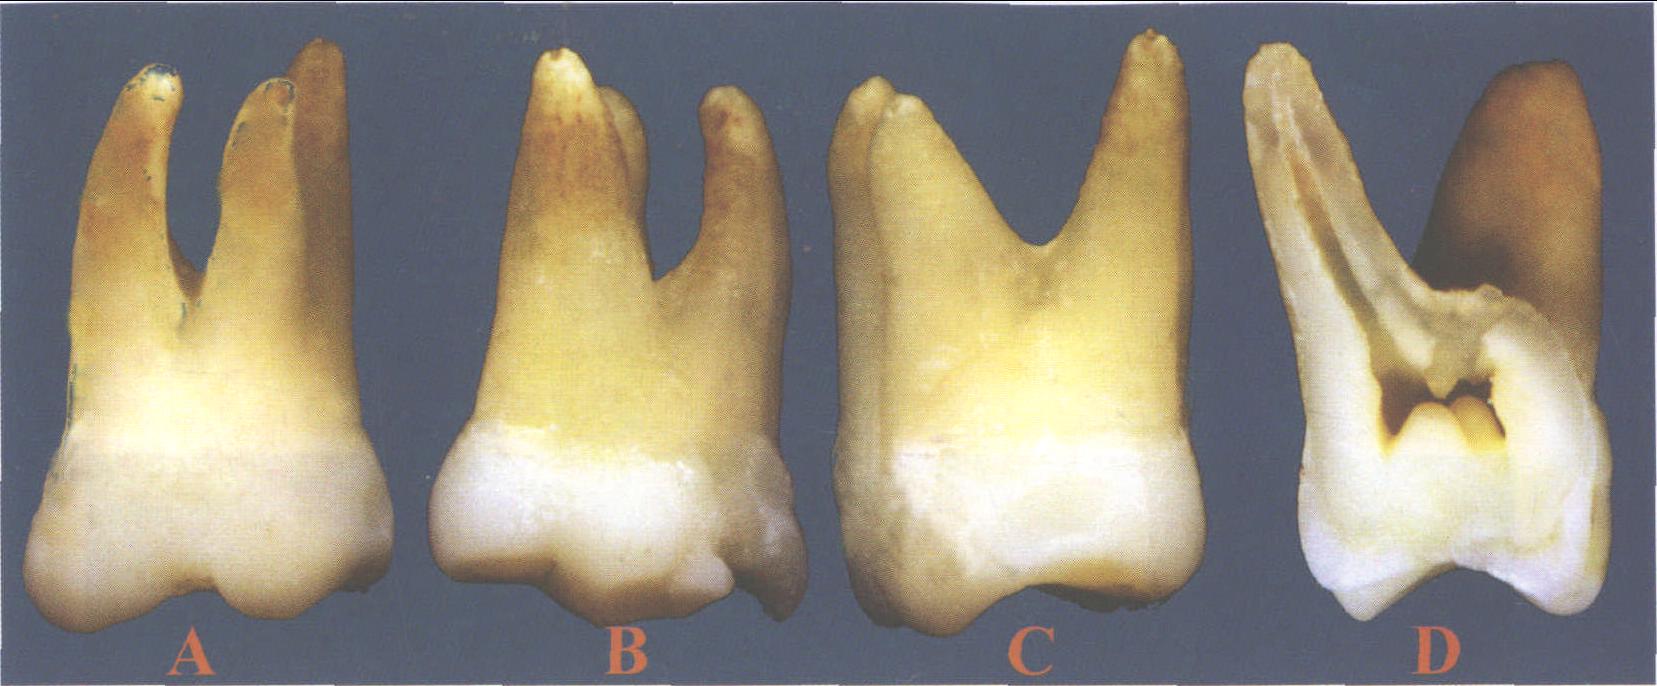 (图) 上颌第一磨牙